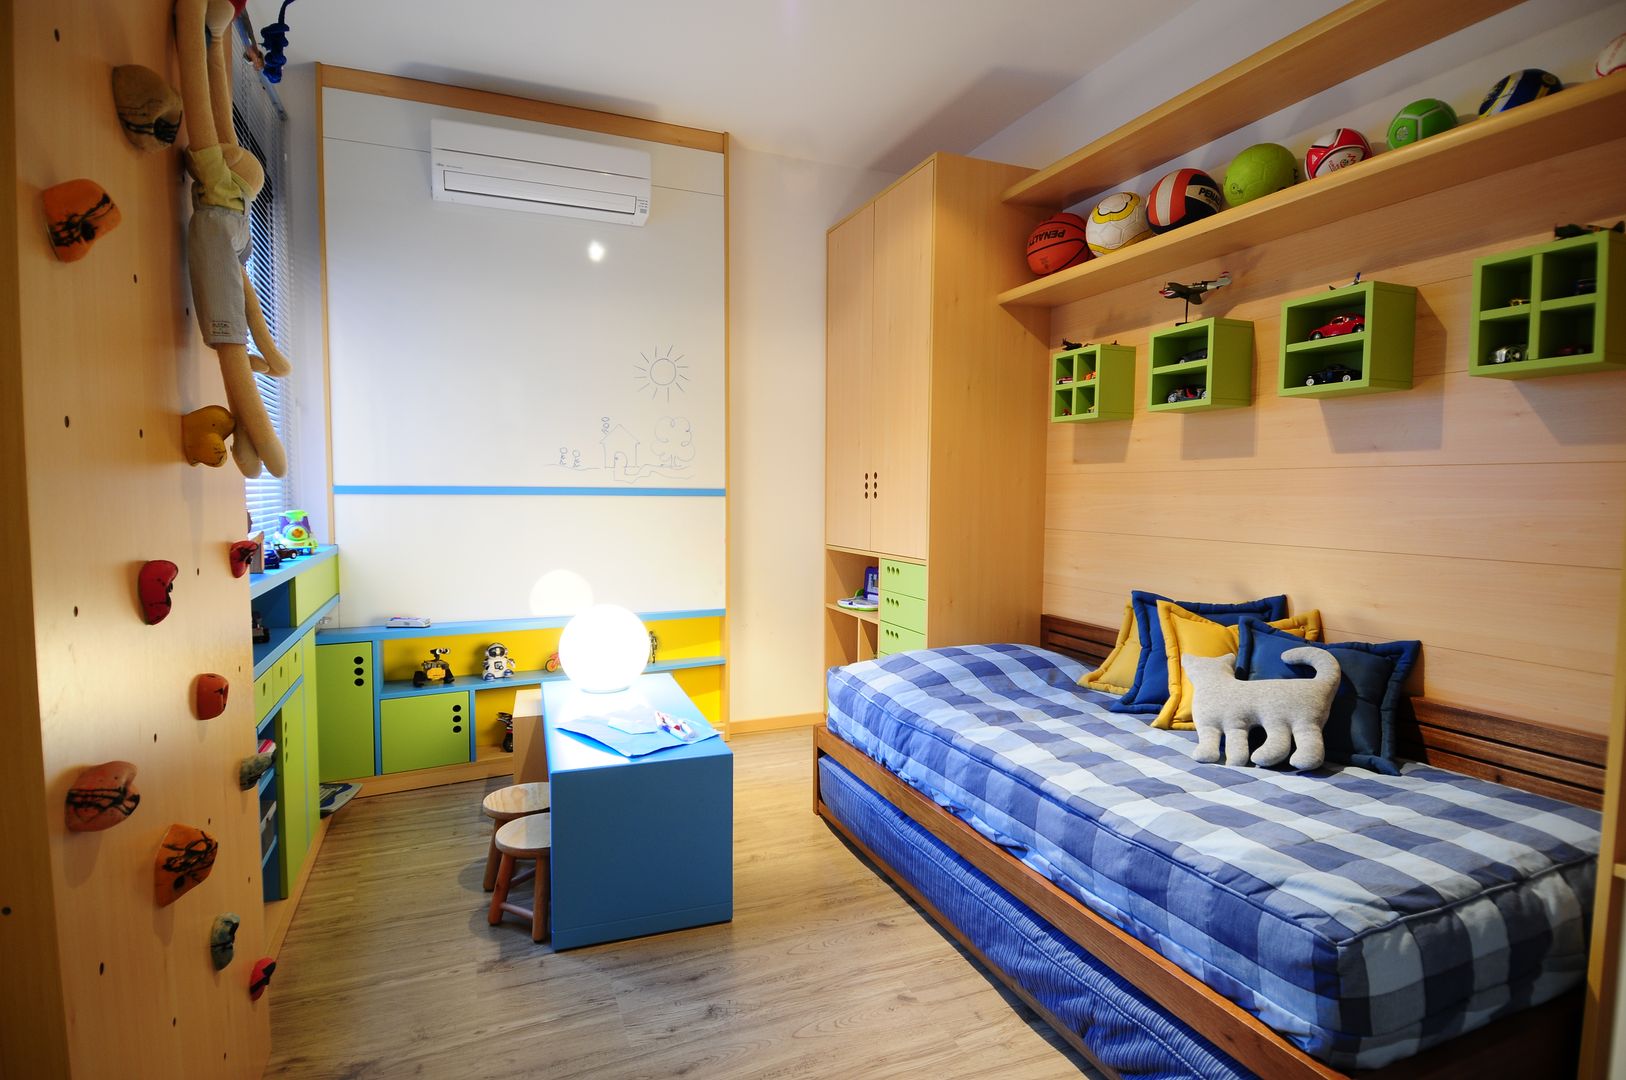 Apartamento Rio Branco., João Linck | Arquitetura João Linck | Arquitetura Habitaciones para niños de estilo moderno